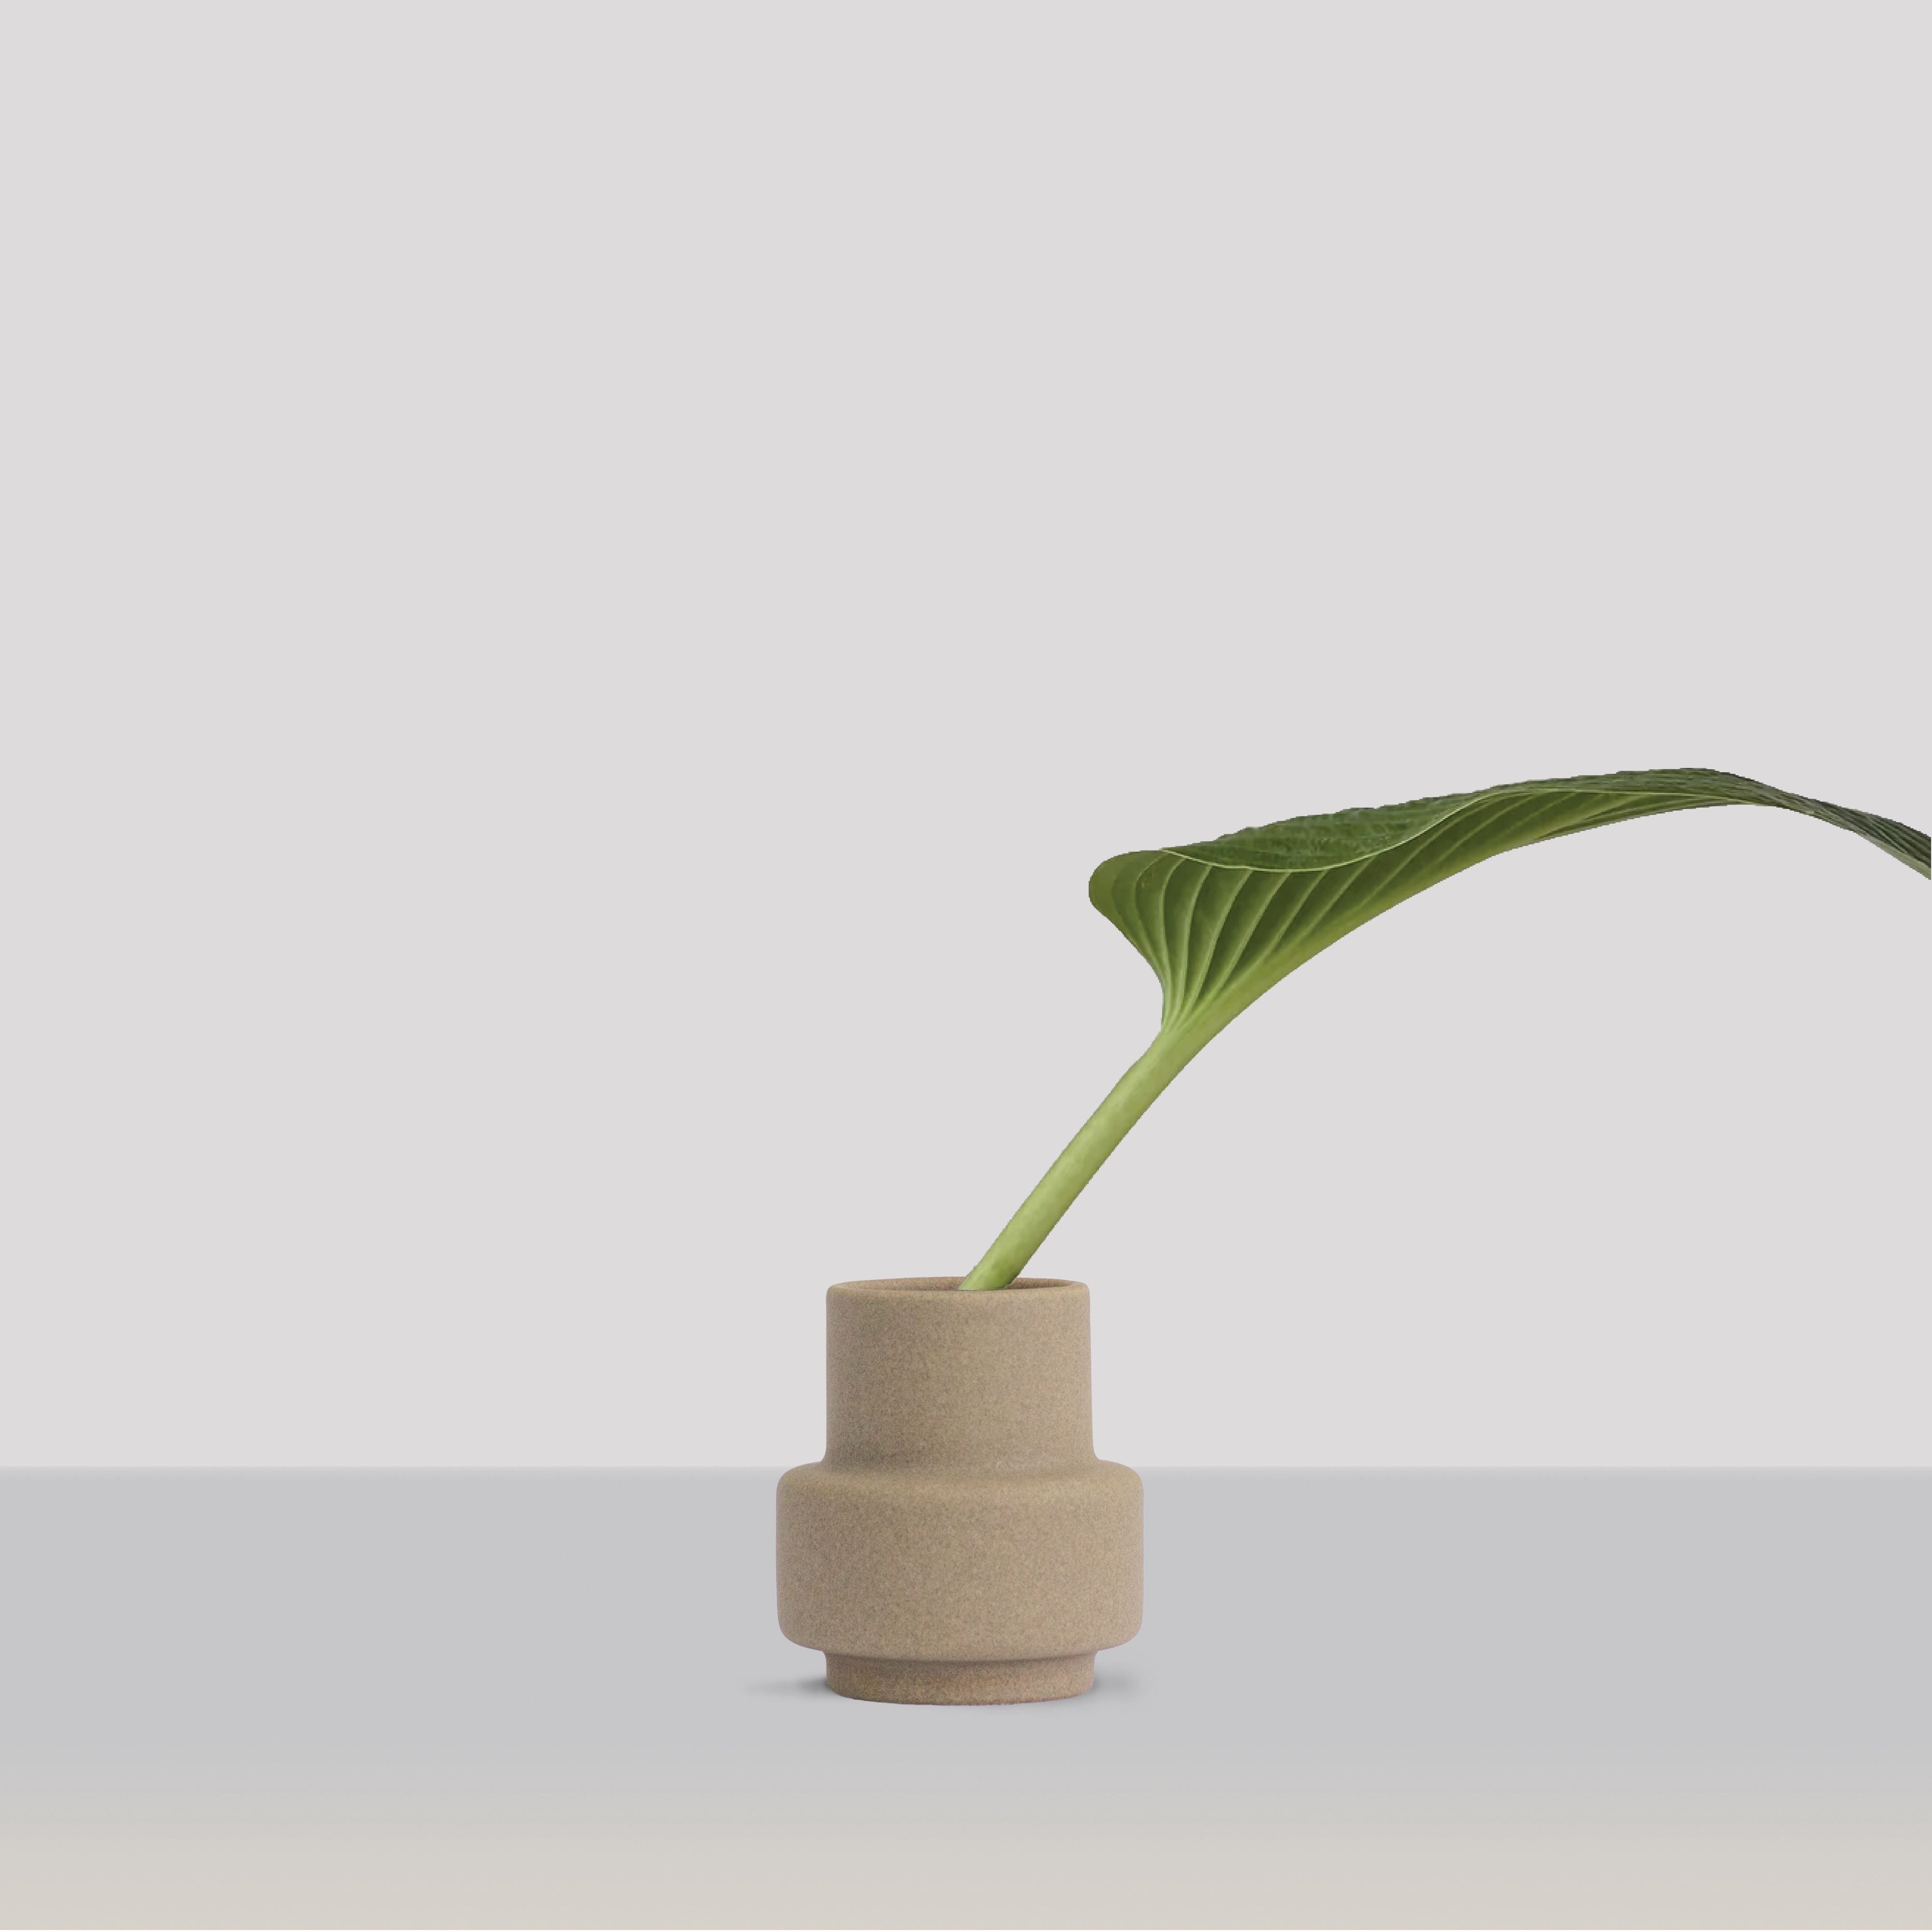 RO -Kollektion Hurrikan Keramik Vase kleiner, leichter Stein